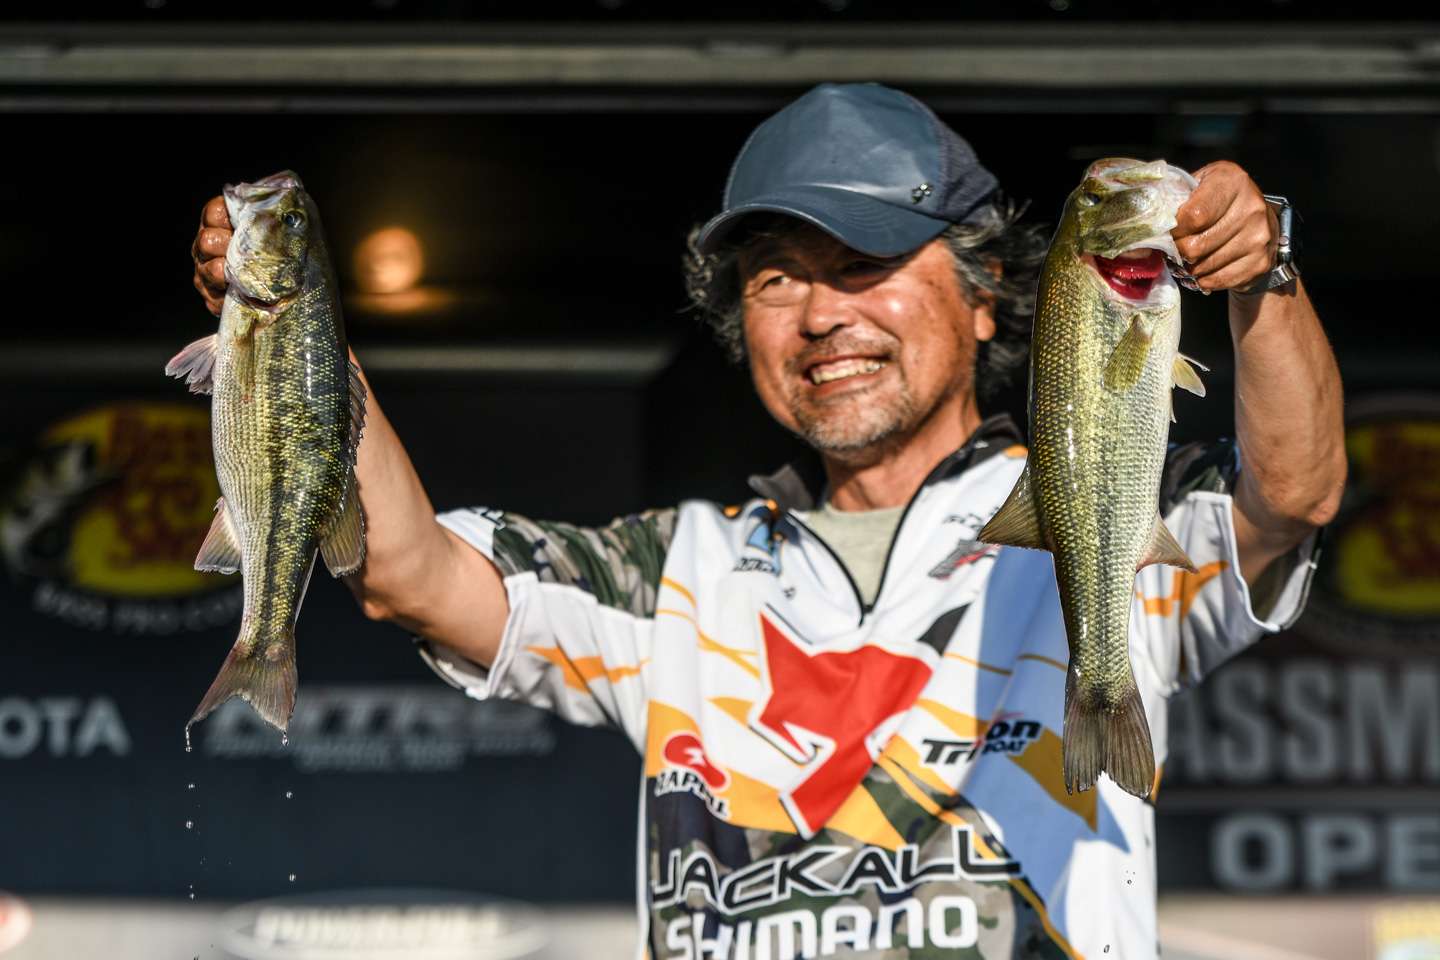 Seiji Kato, 12th place (20-8)